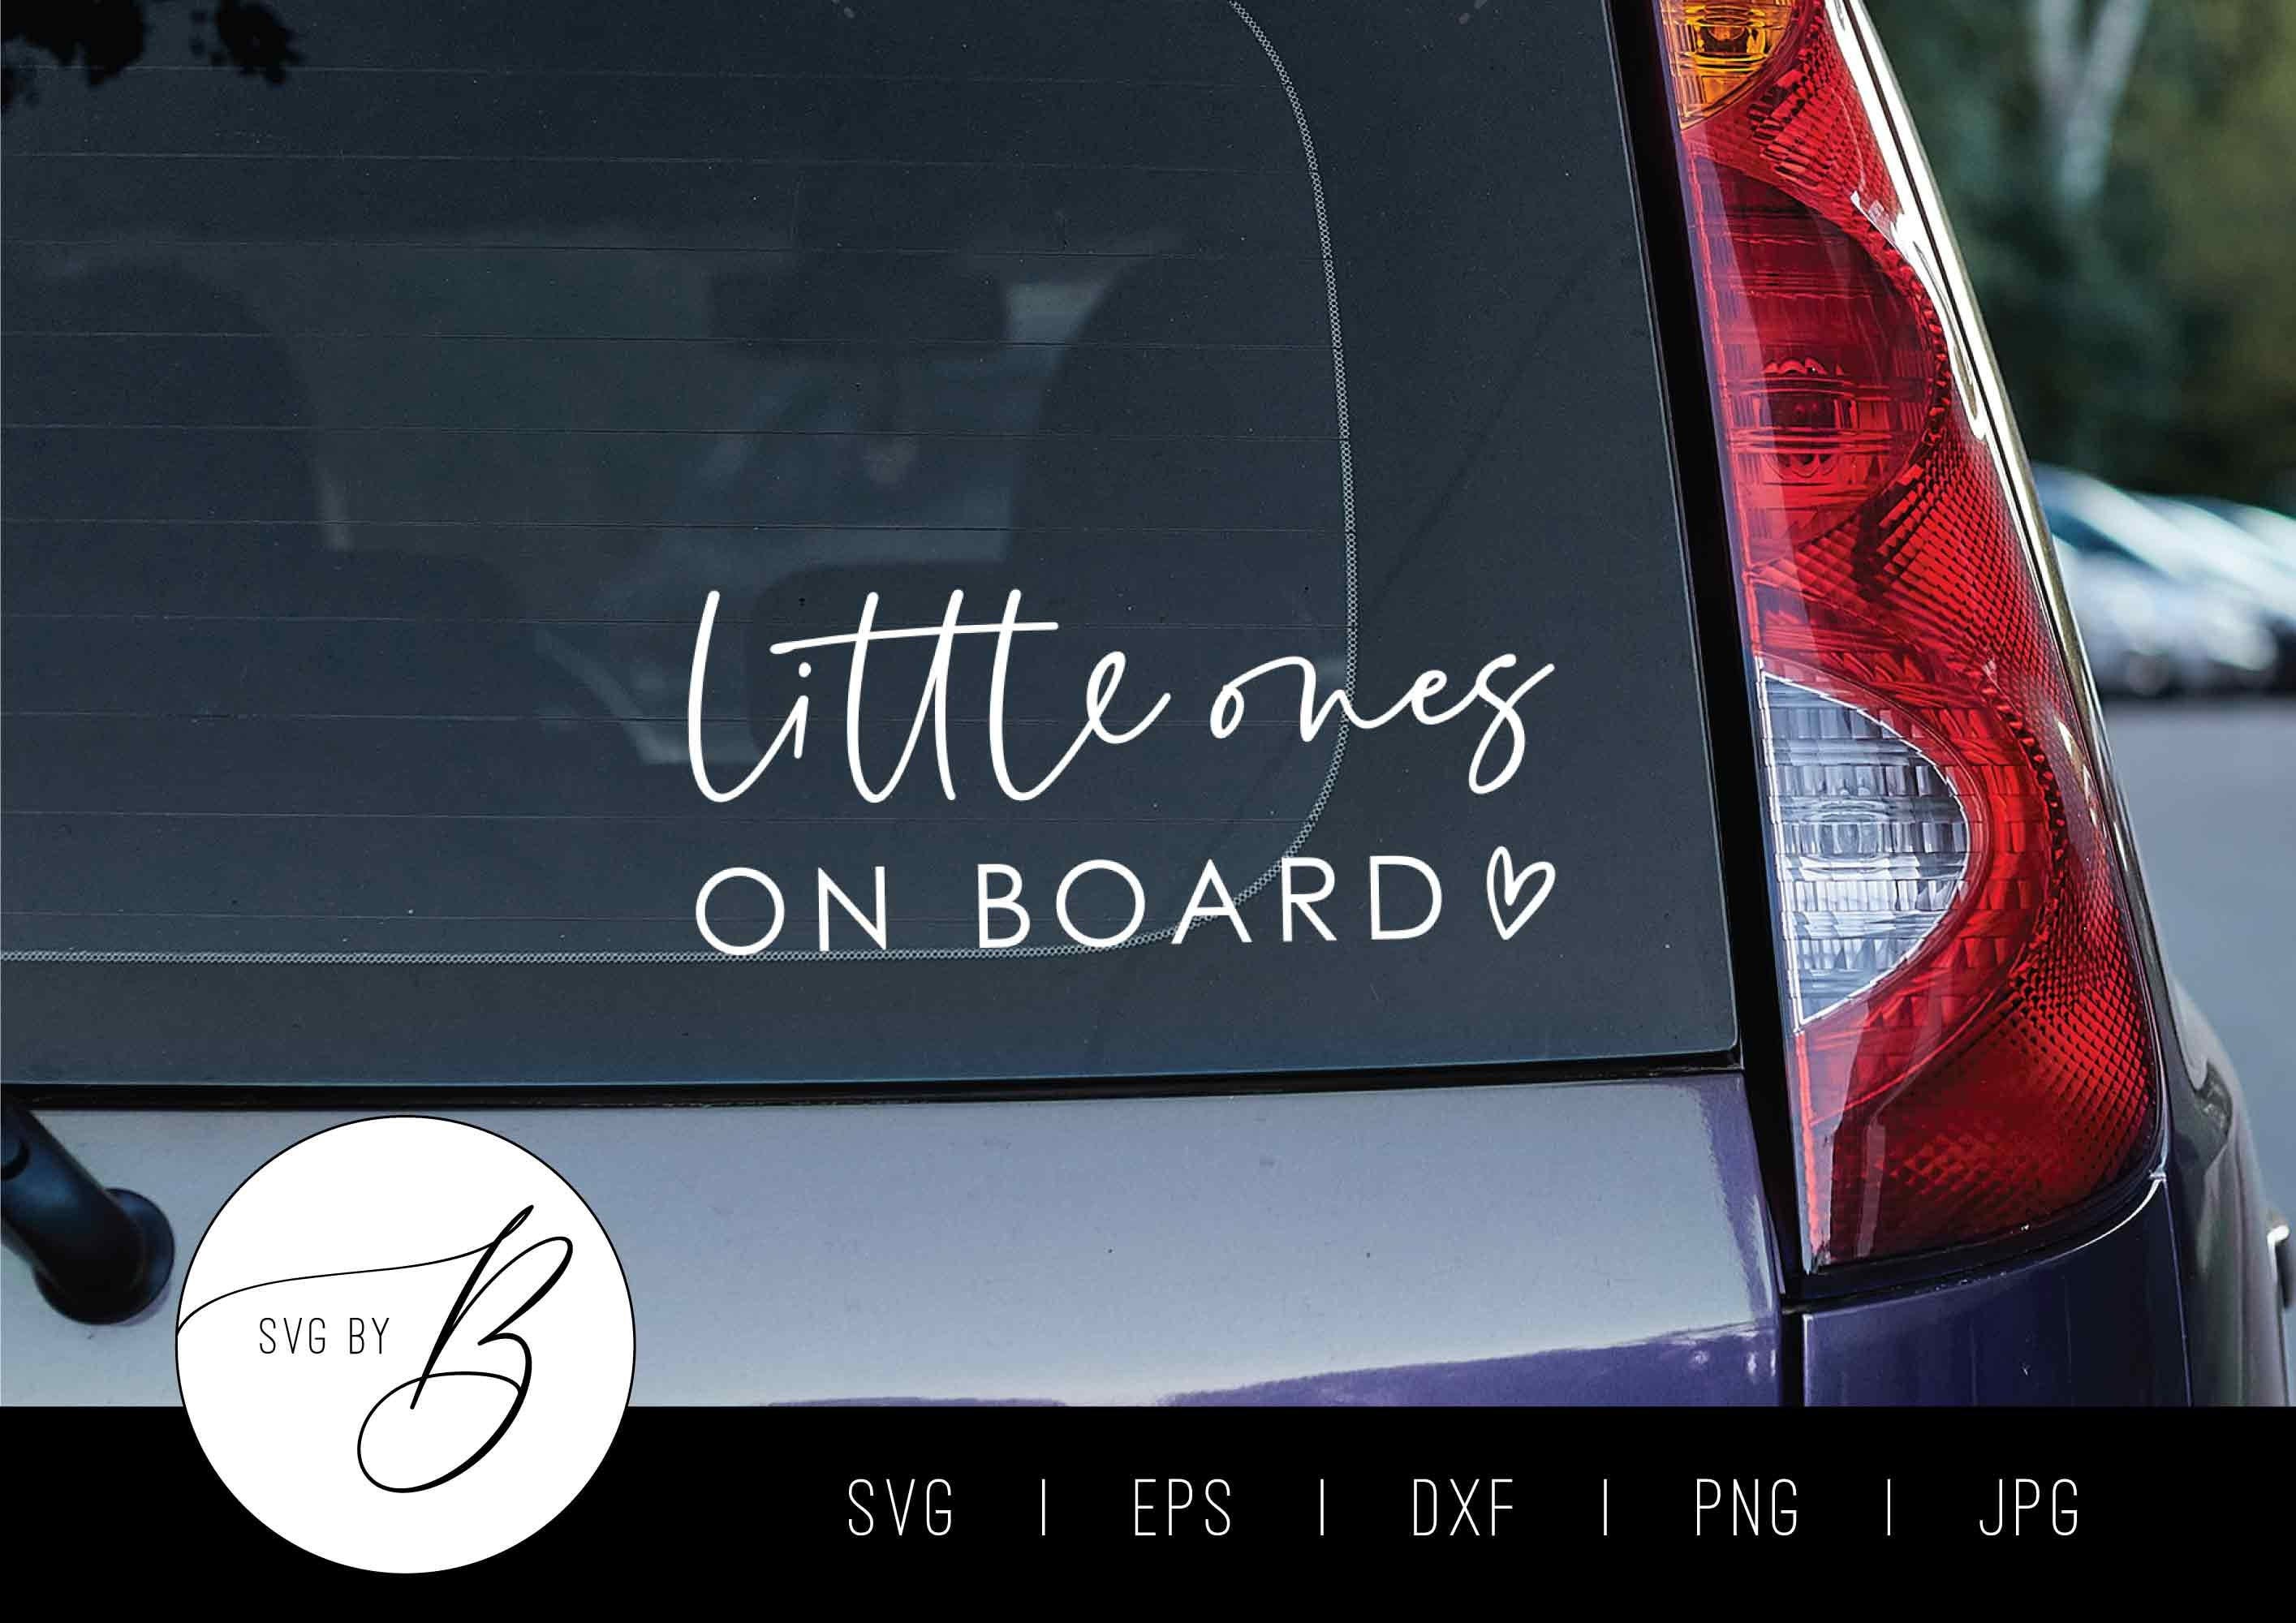 Little Ones on Board SVG | Baby Kids Children Car Decal Download SVG | svg, eps, dxf, png, jpg | Cut File